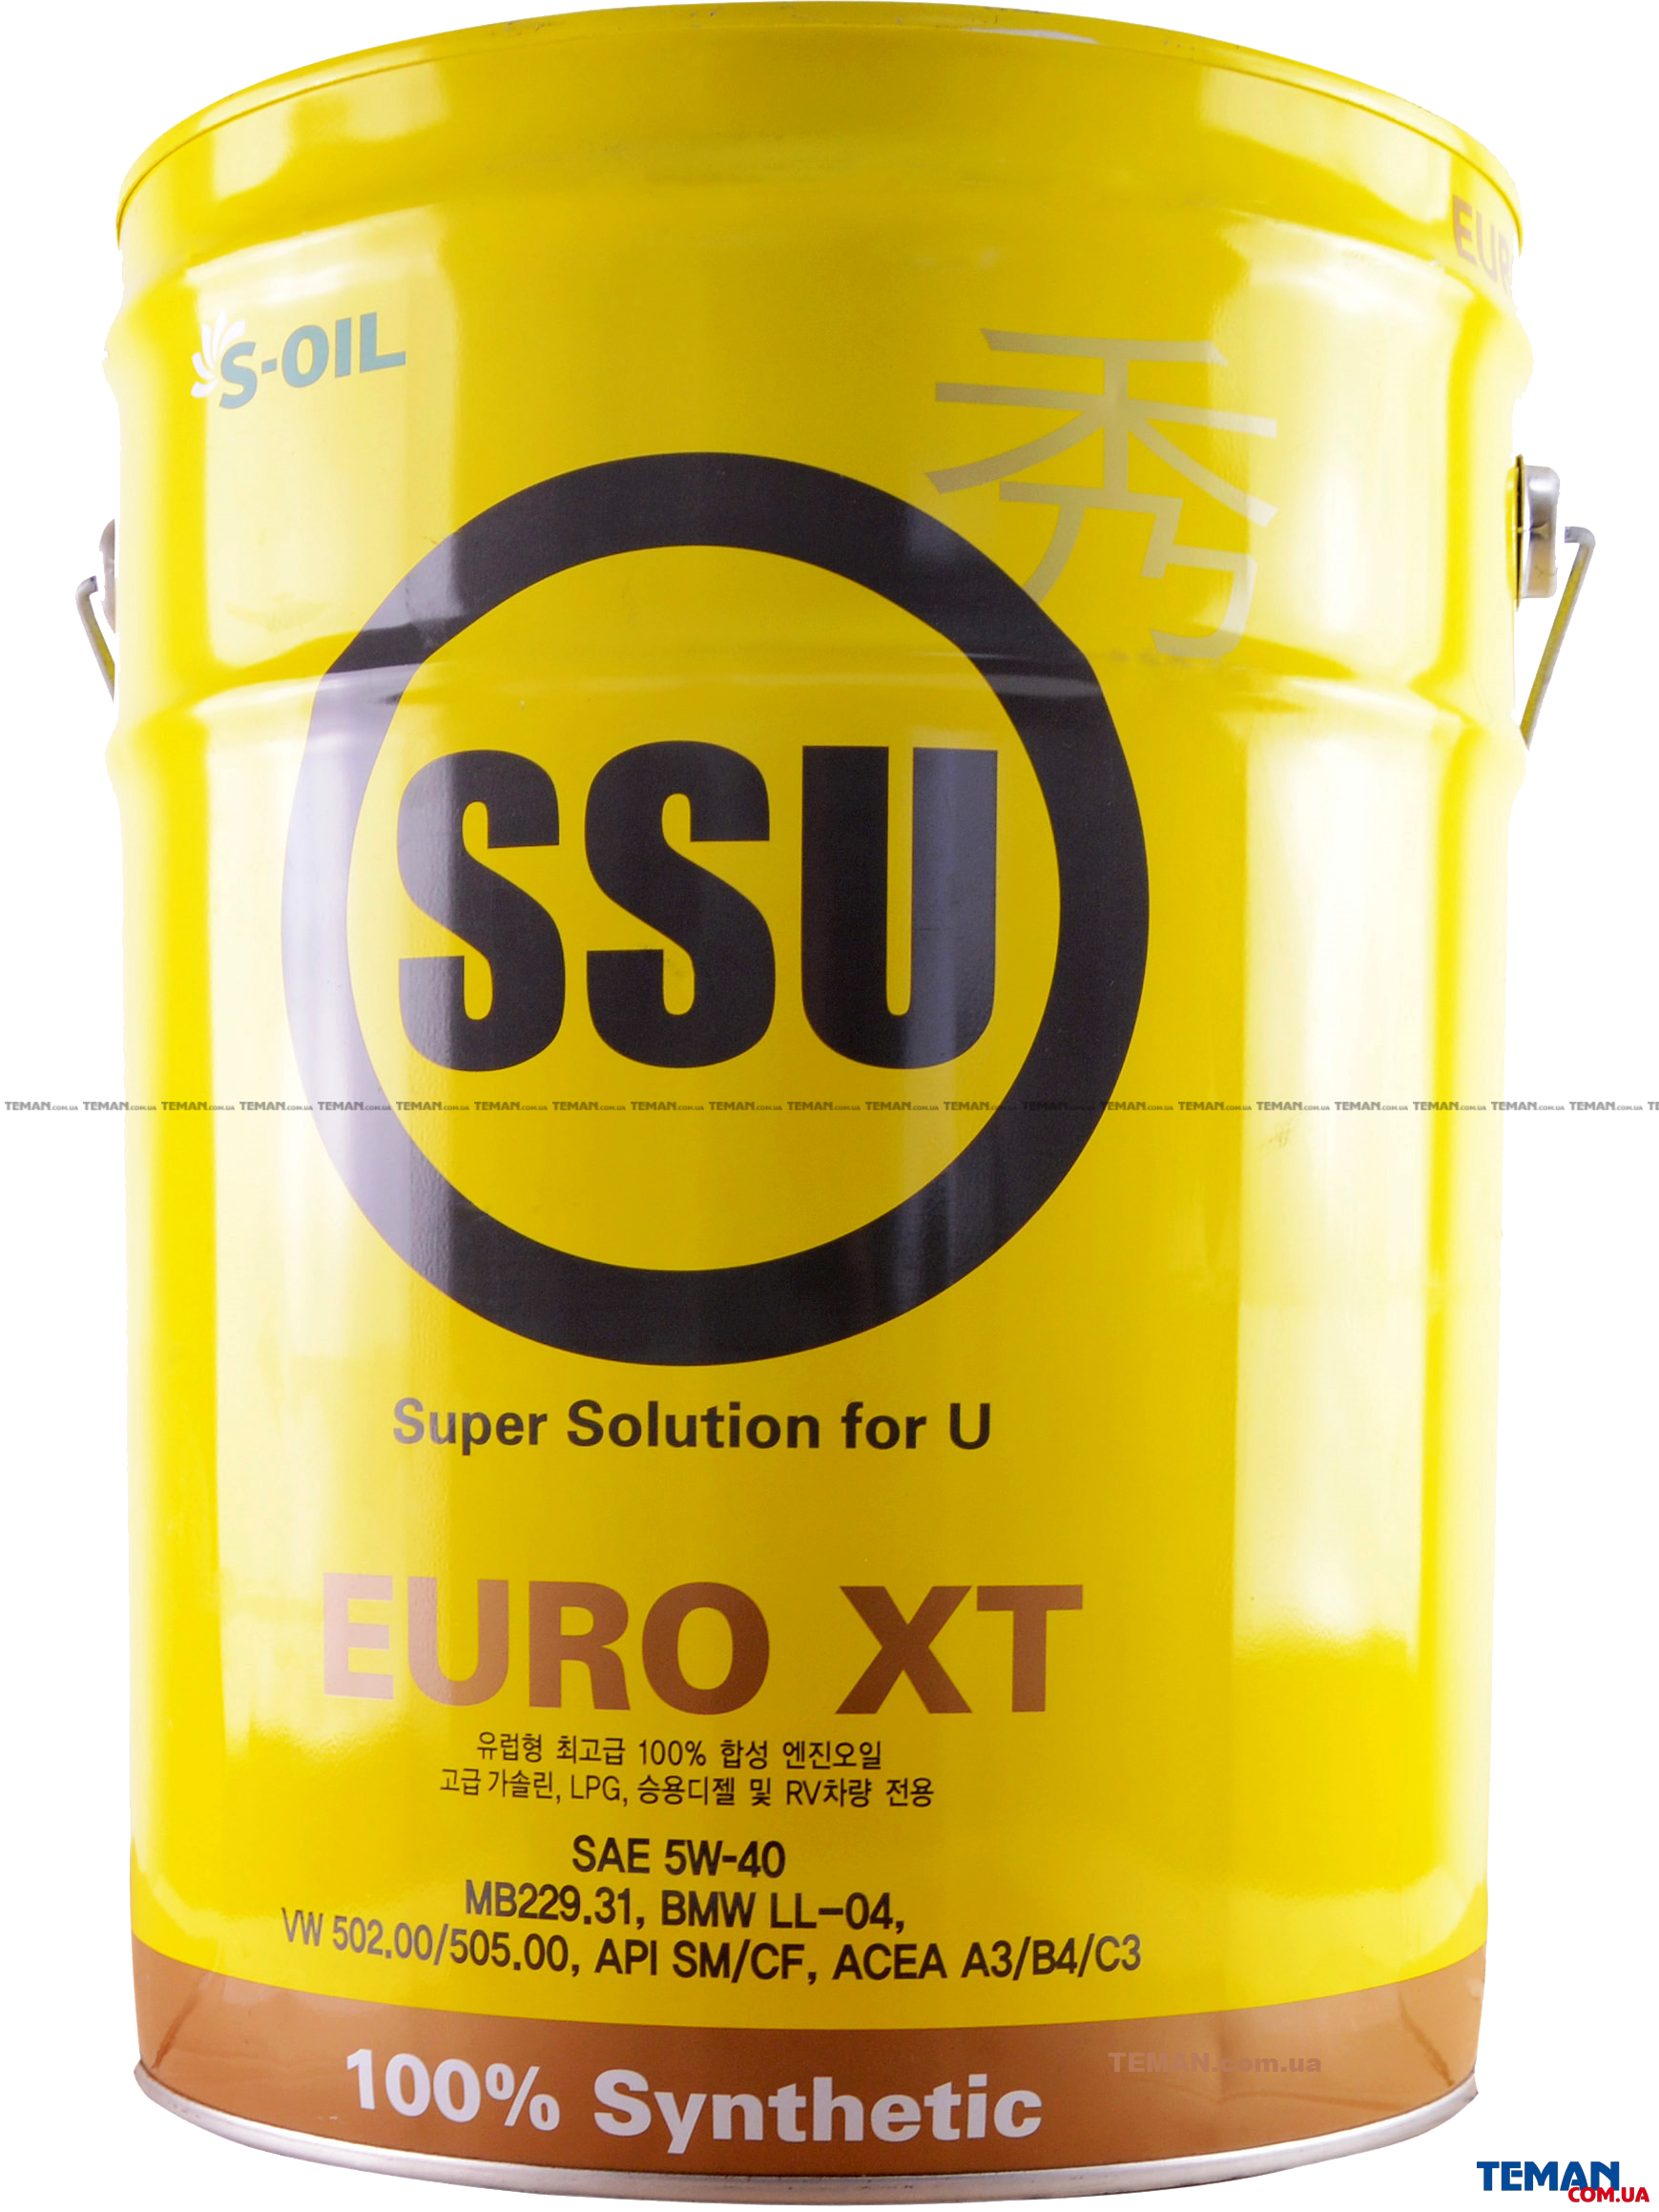  Купить Синтетическое моторное масло SSU EURO XT 5W40, 20 лS-OIL SSUEUROXT5W4020   